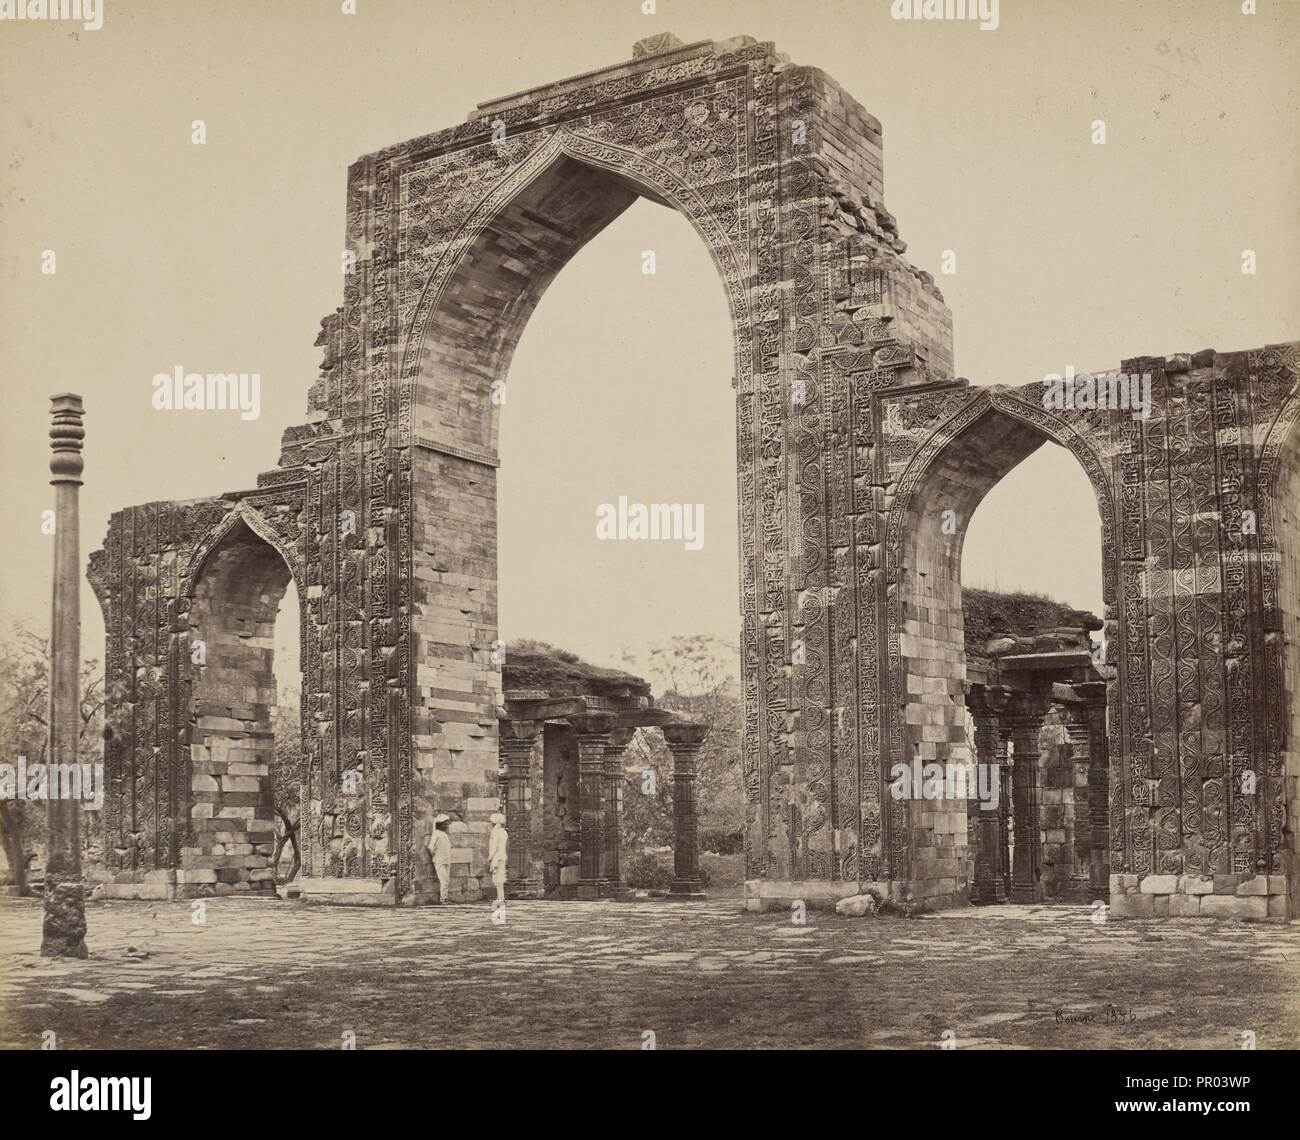 La Grande Arche et bornes, Kútub ; Samuel Bourne, anglais, 1834 - 1912, Delhi, Inde ; vers 1866 ; à l'albumine argentique Banque D'Images